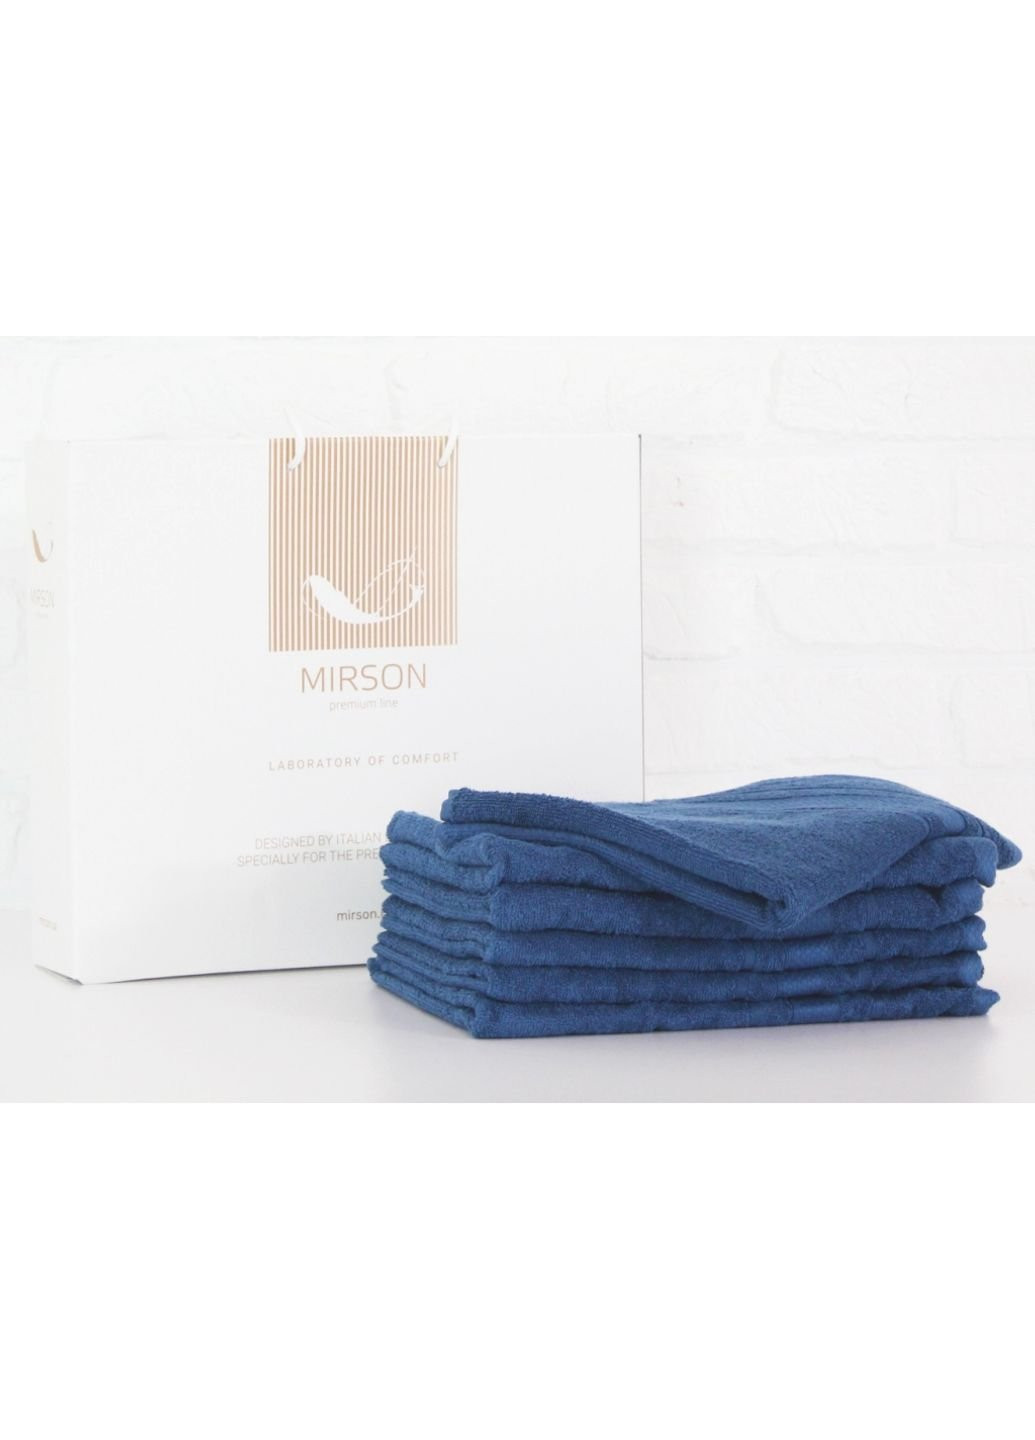 Mirson полотенце набор банных №5085 elite softness blueberry 70х140 6 шт (2200003524253) синий производство - Украина